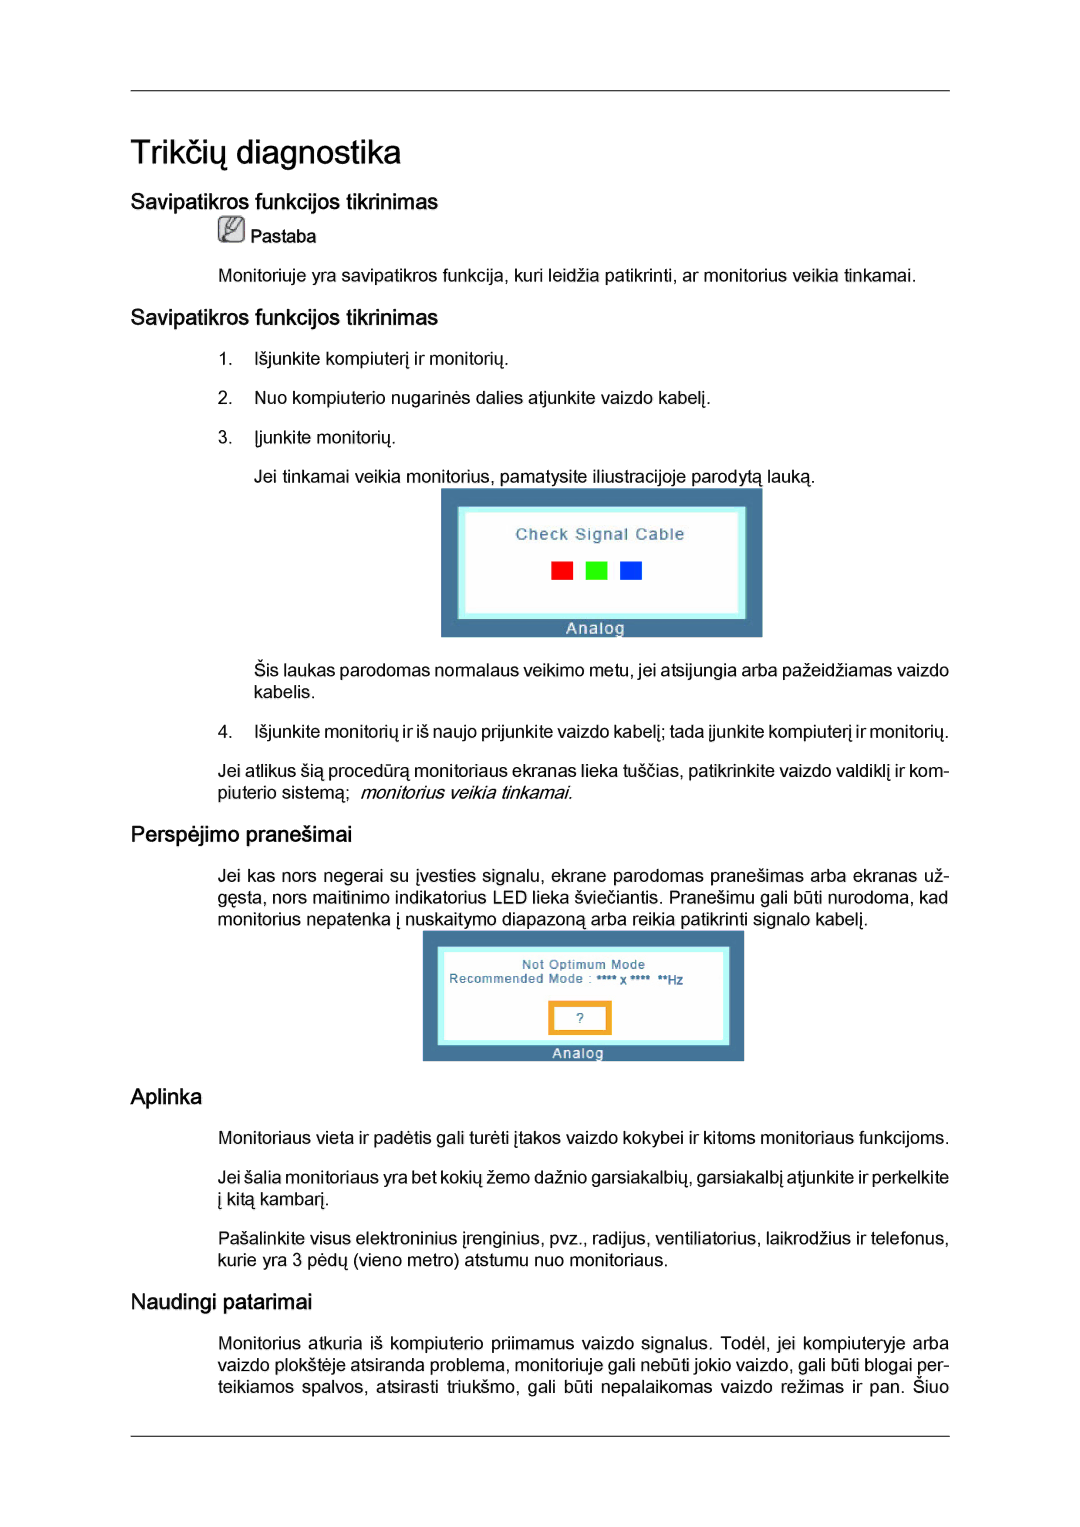 Samsung LS24KIVKBQ/EDC manual Trikčių diagnostika, Savipatikros funkcijos tikrinimas, Perspėjimo pranešimai, Aplinka 